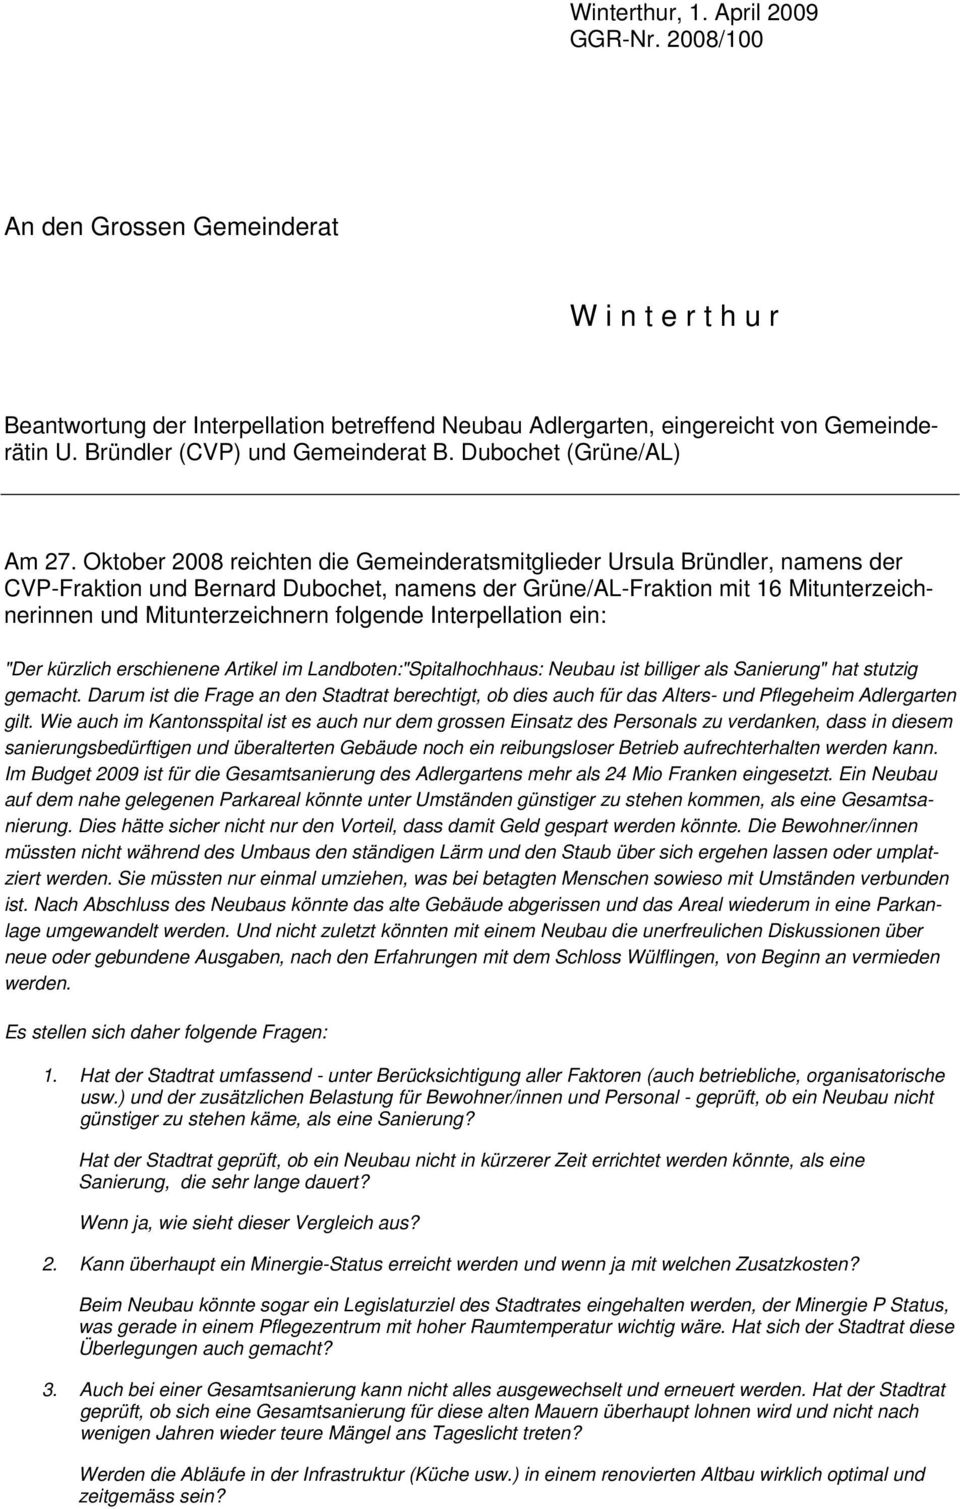 Oktober 2008 reichten die Gemeinderatsmitglieder Ursula Bründler, namens der CVP-Fraktion und Bernard Dubochet, namens der Grüne/AL-Fraktion mit 16 Mitunterzeichnerinnen und Mitunterzeichnern